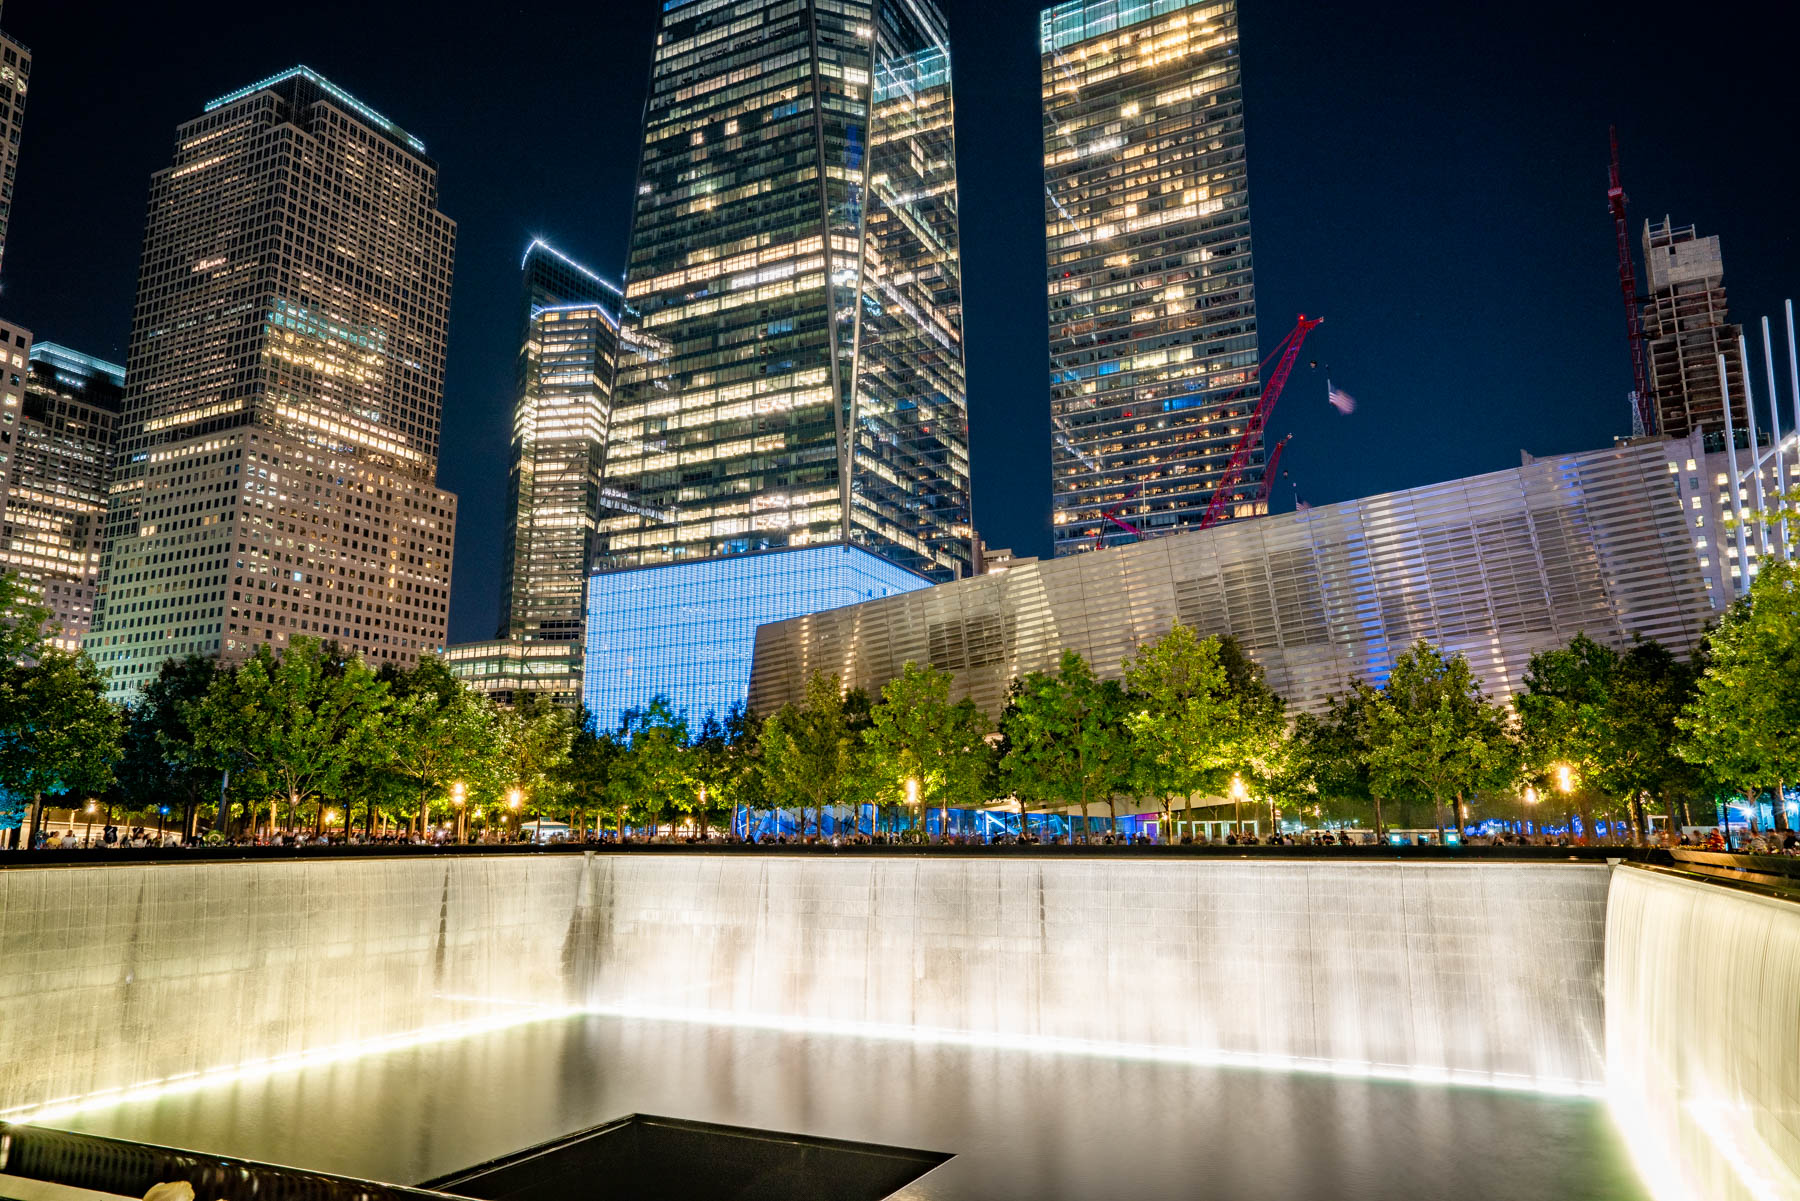 Mejores cosas que hacer en Nueva York, 9/11 Memorial, 3 days in New York City